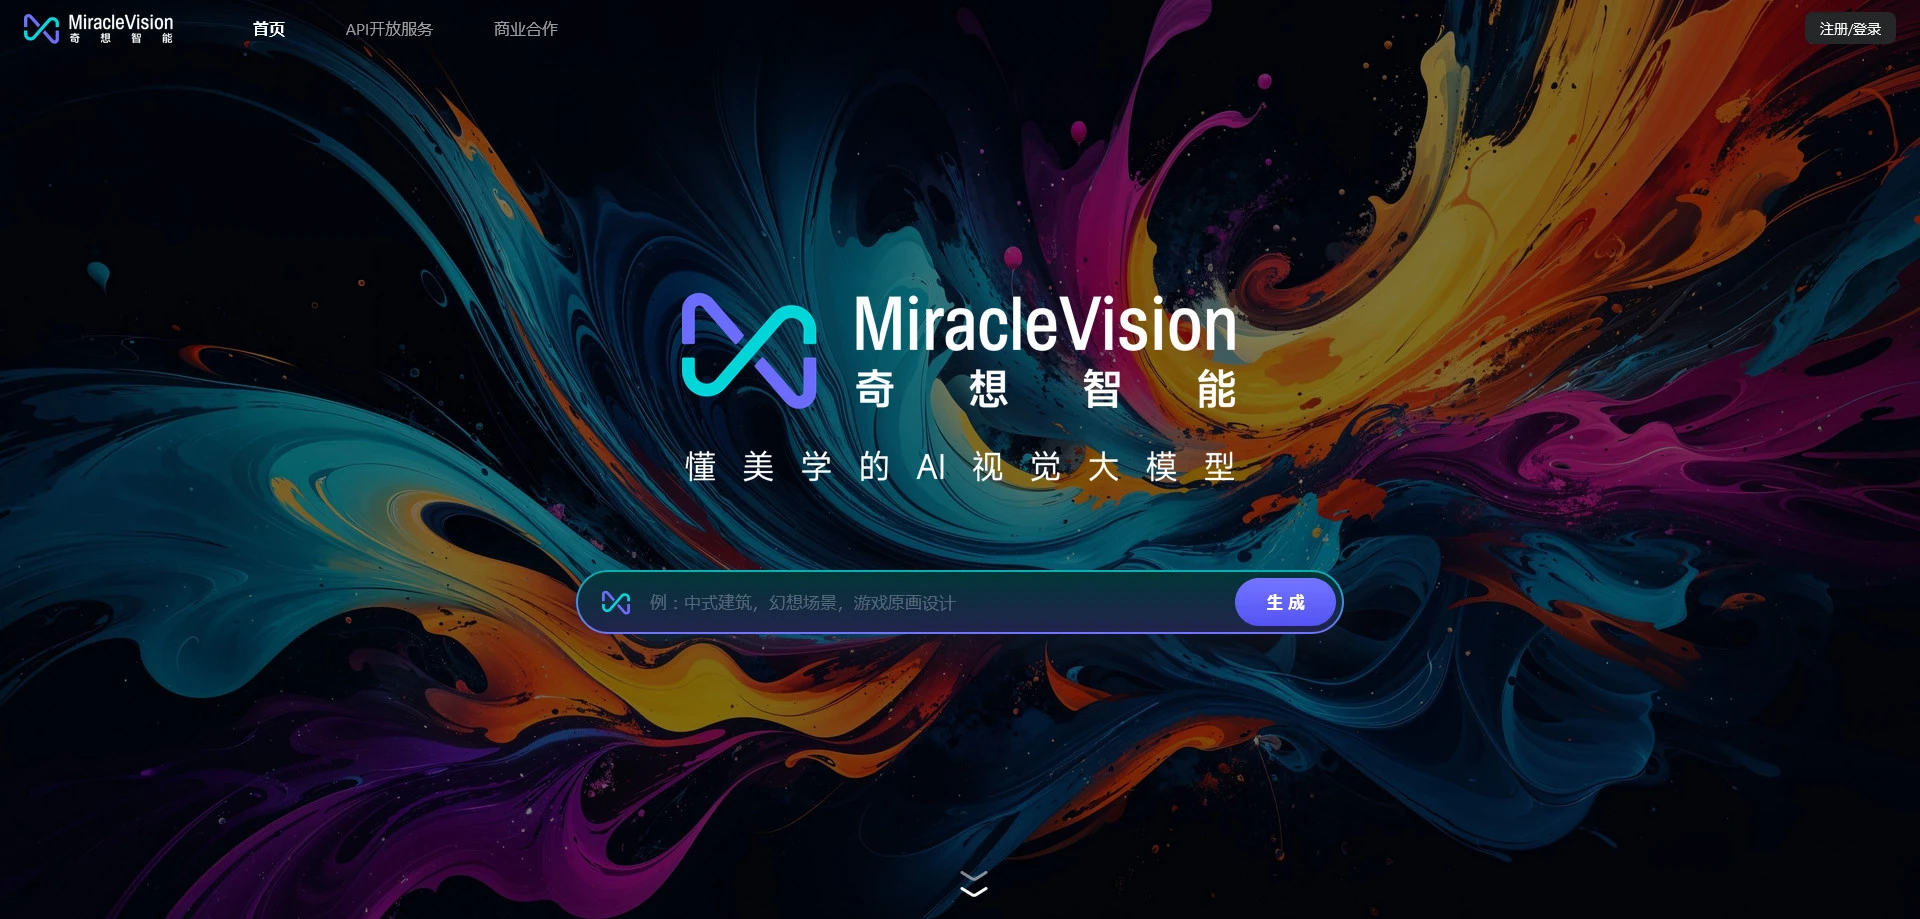 AI工具与服务推荐 - MiracleVision - AI视觉大模型 - 特色图片